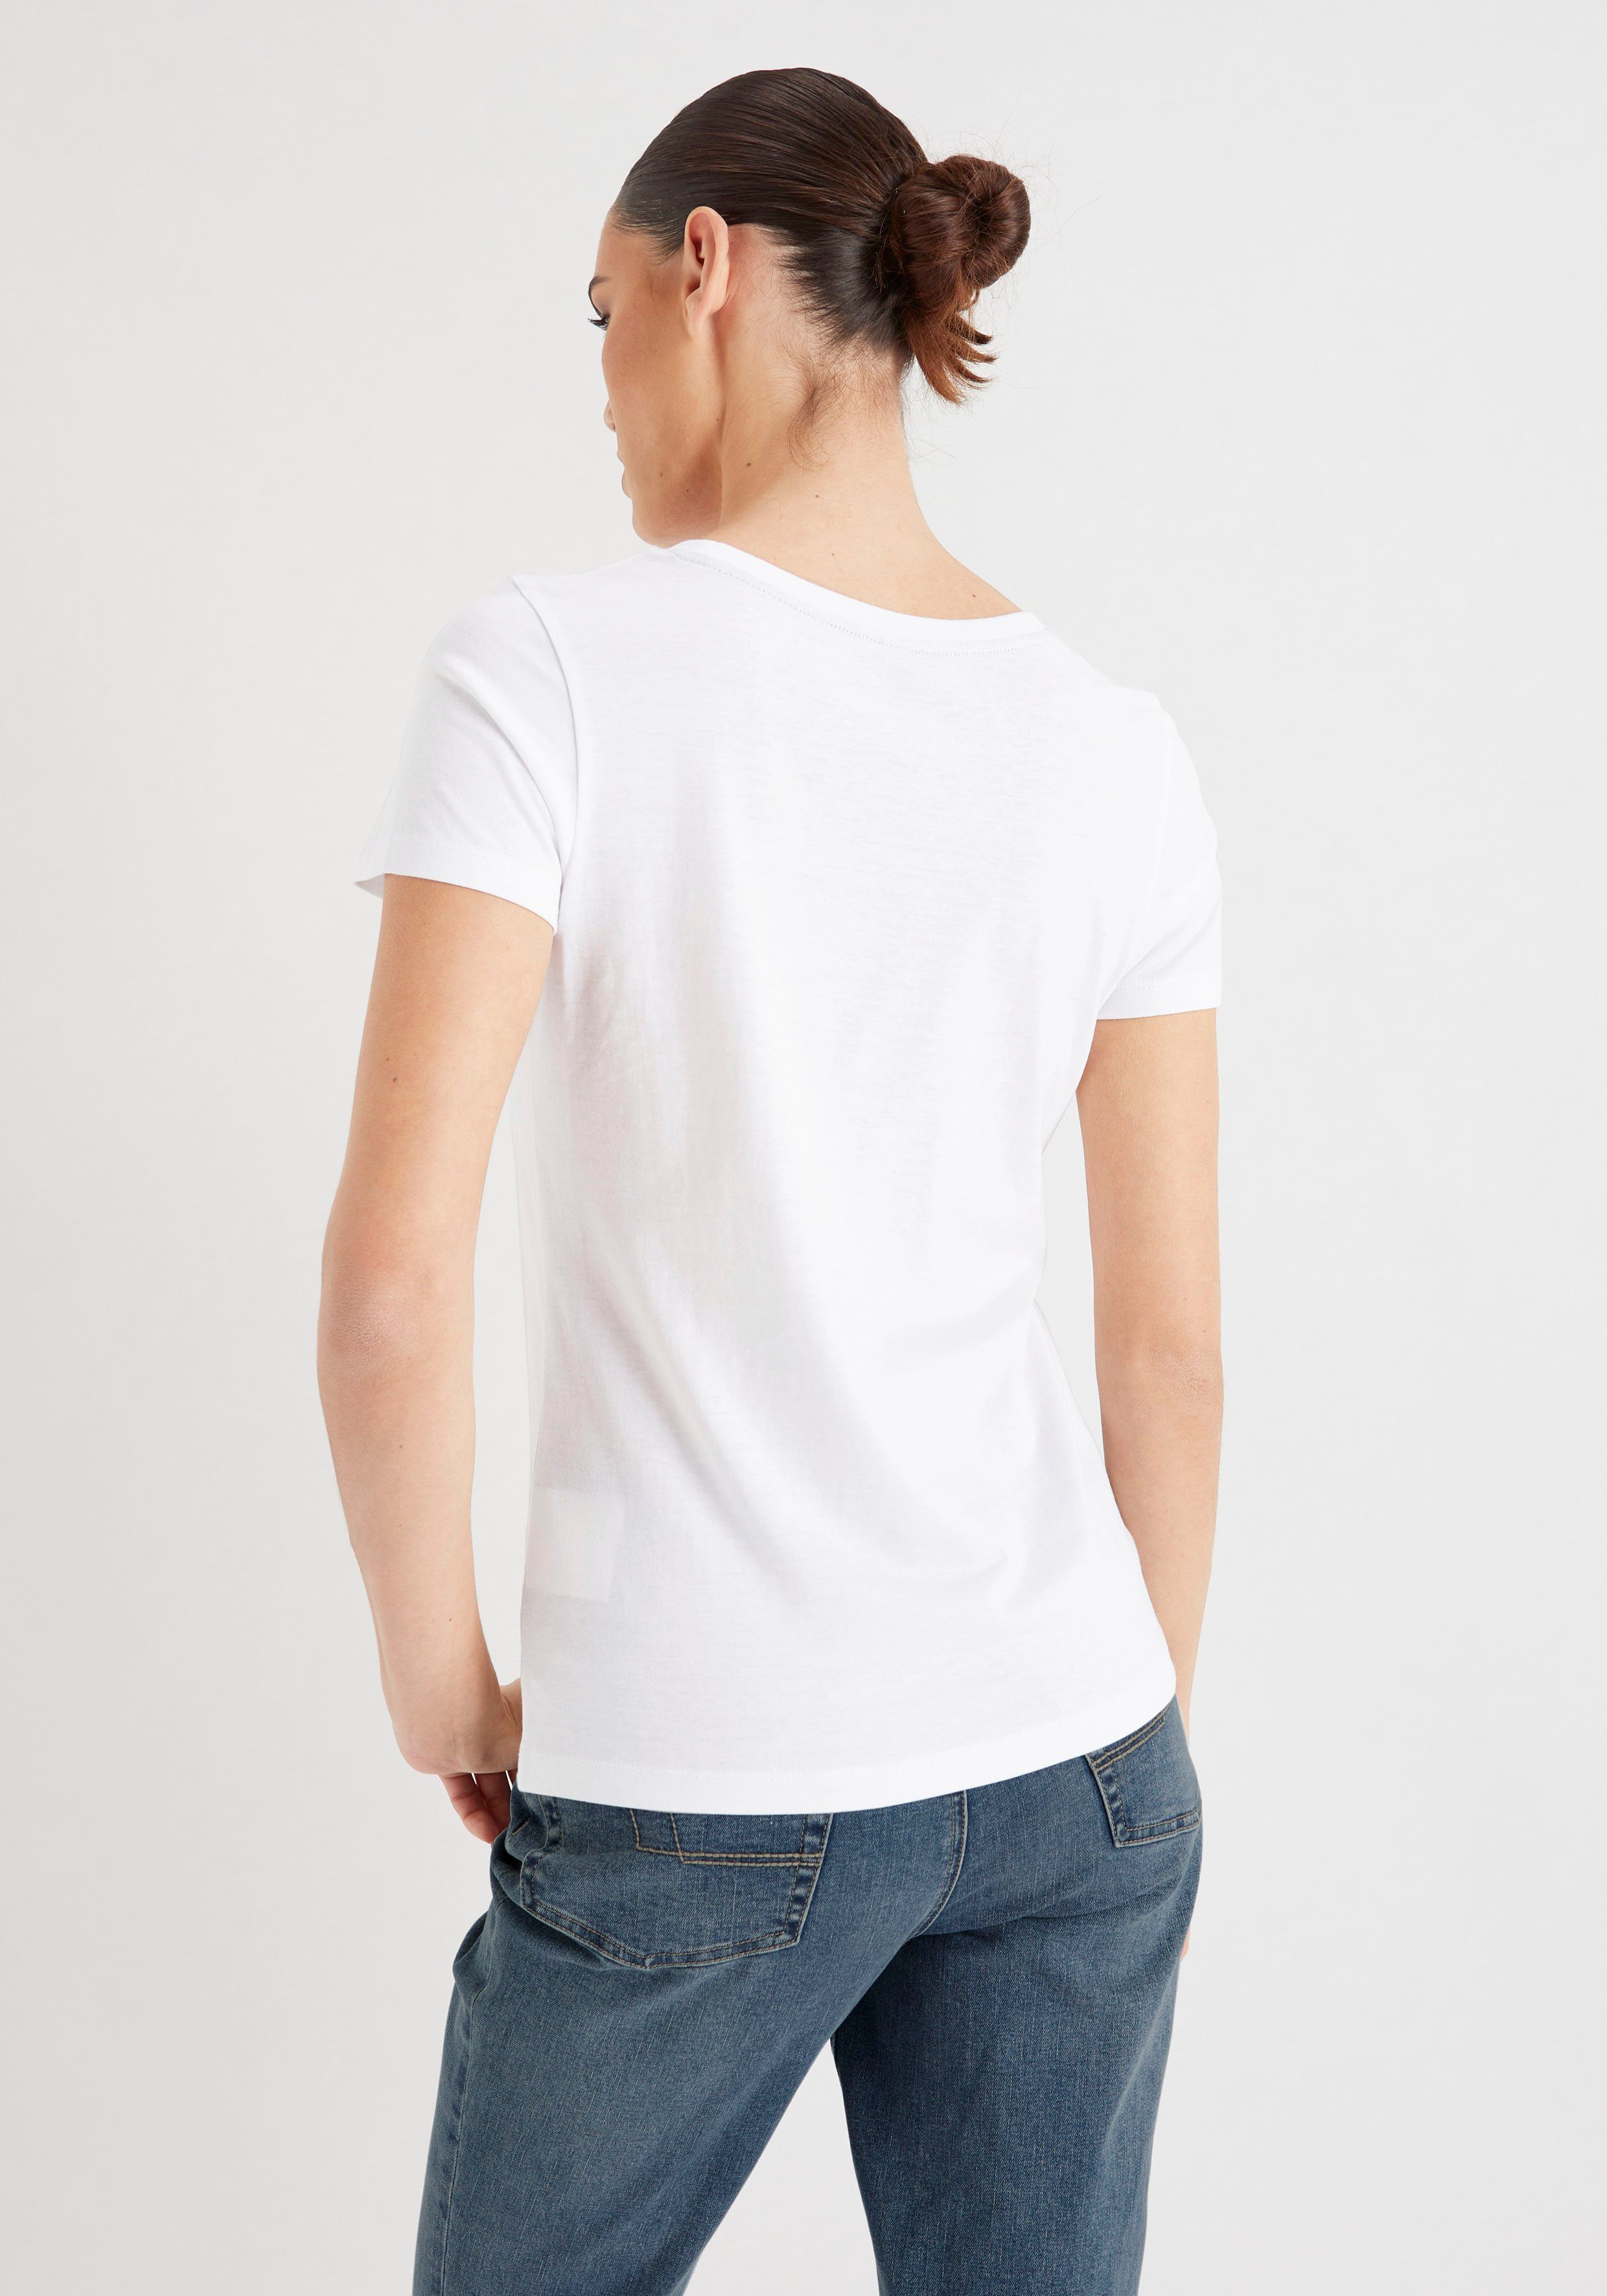 T-Shirt HECHTER Druck weiß-rot PARIS mit